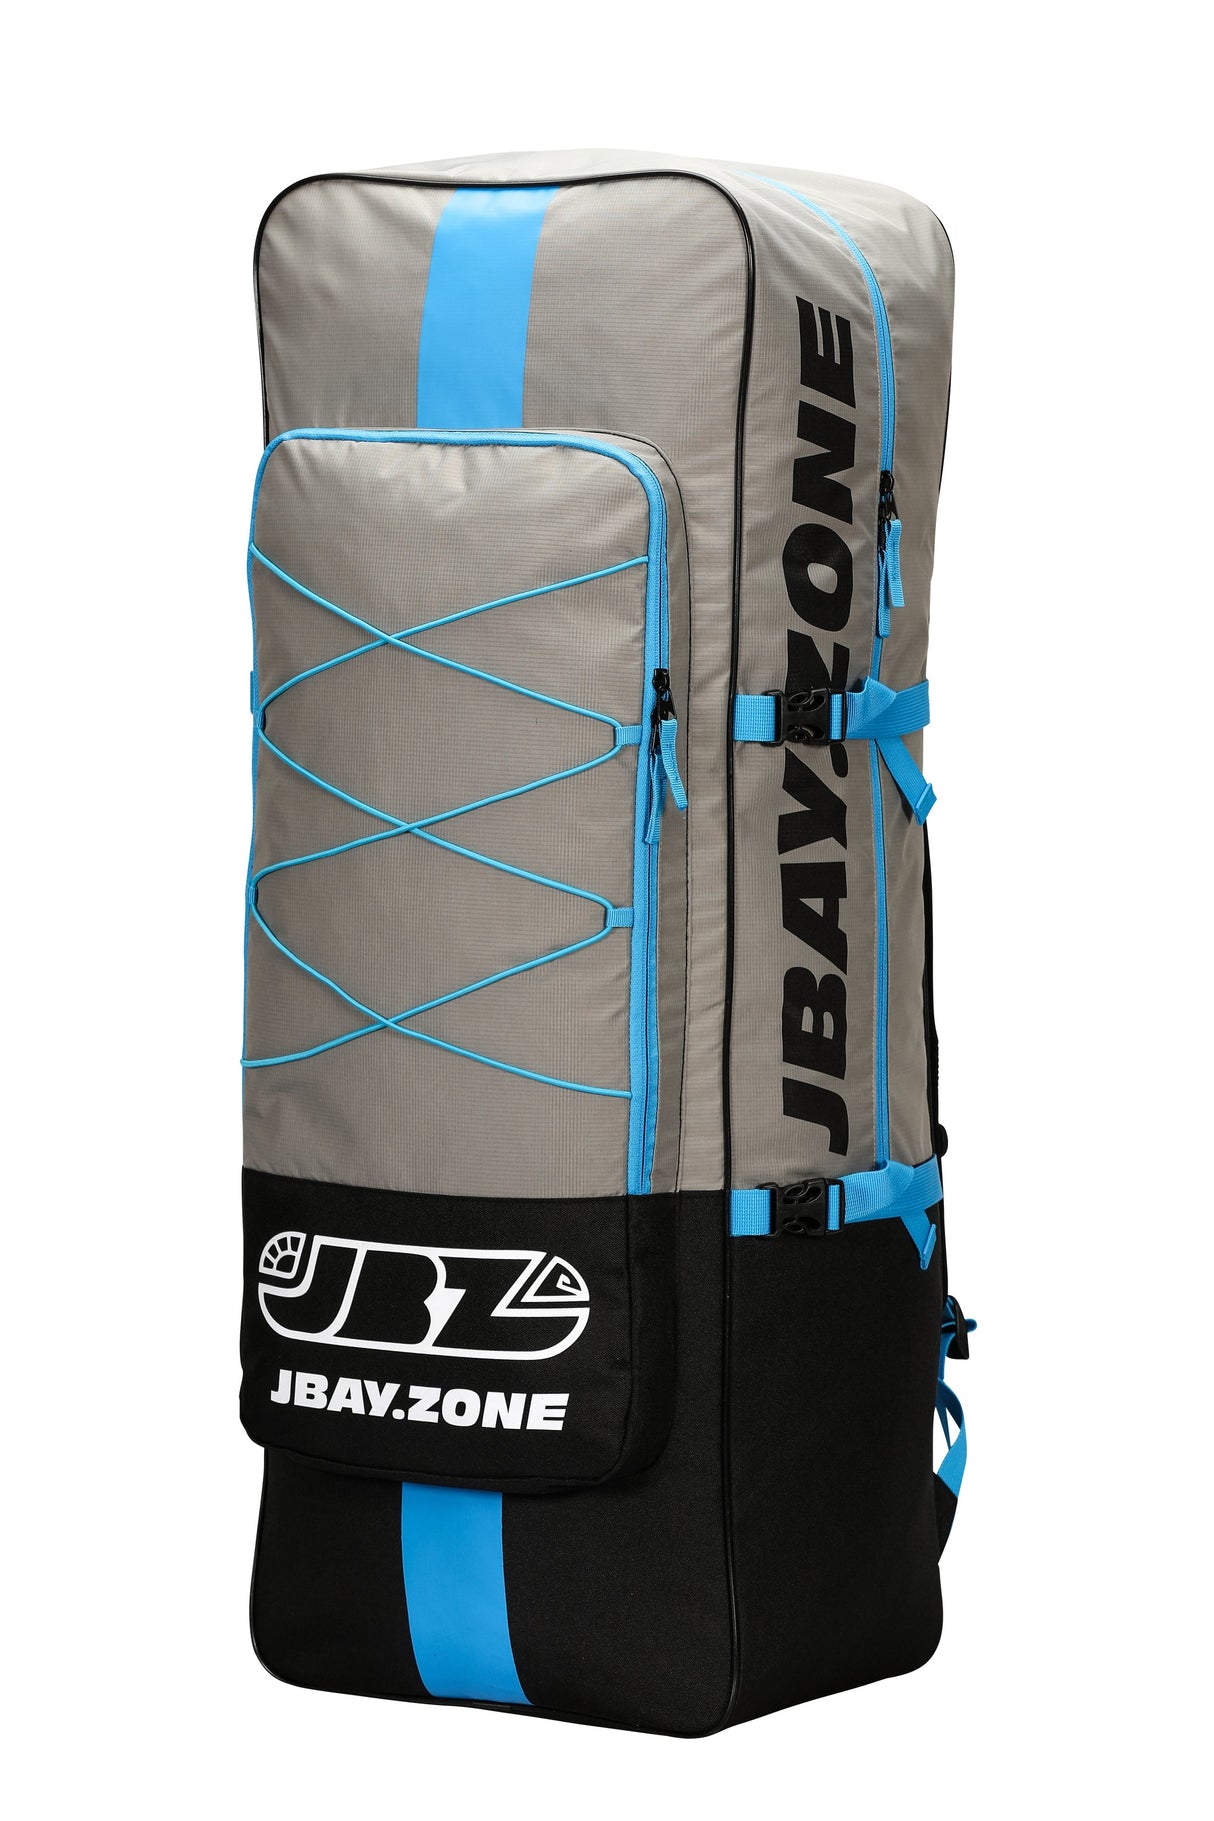 B2 Beta - JBAY.ZONE Lunghezza 320cm + Pagaia Alluminio + Zaino Trasporto + Pompa + Cavigliera Linea Jbay.zone